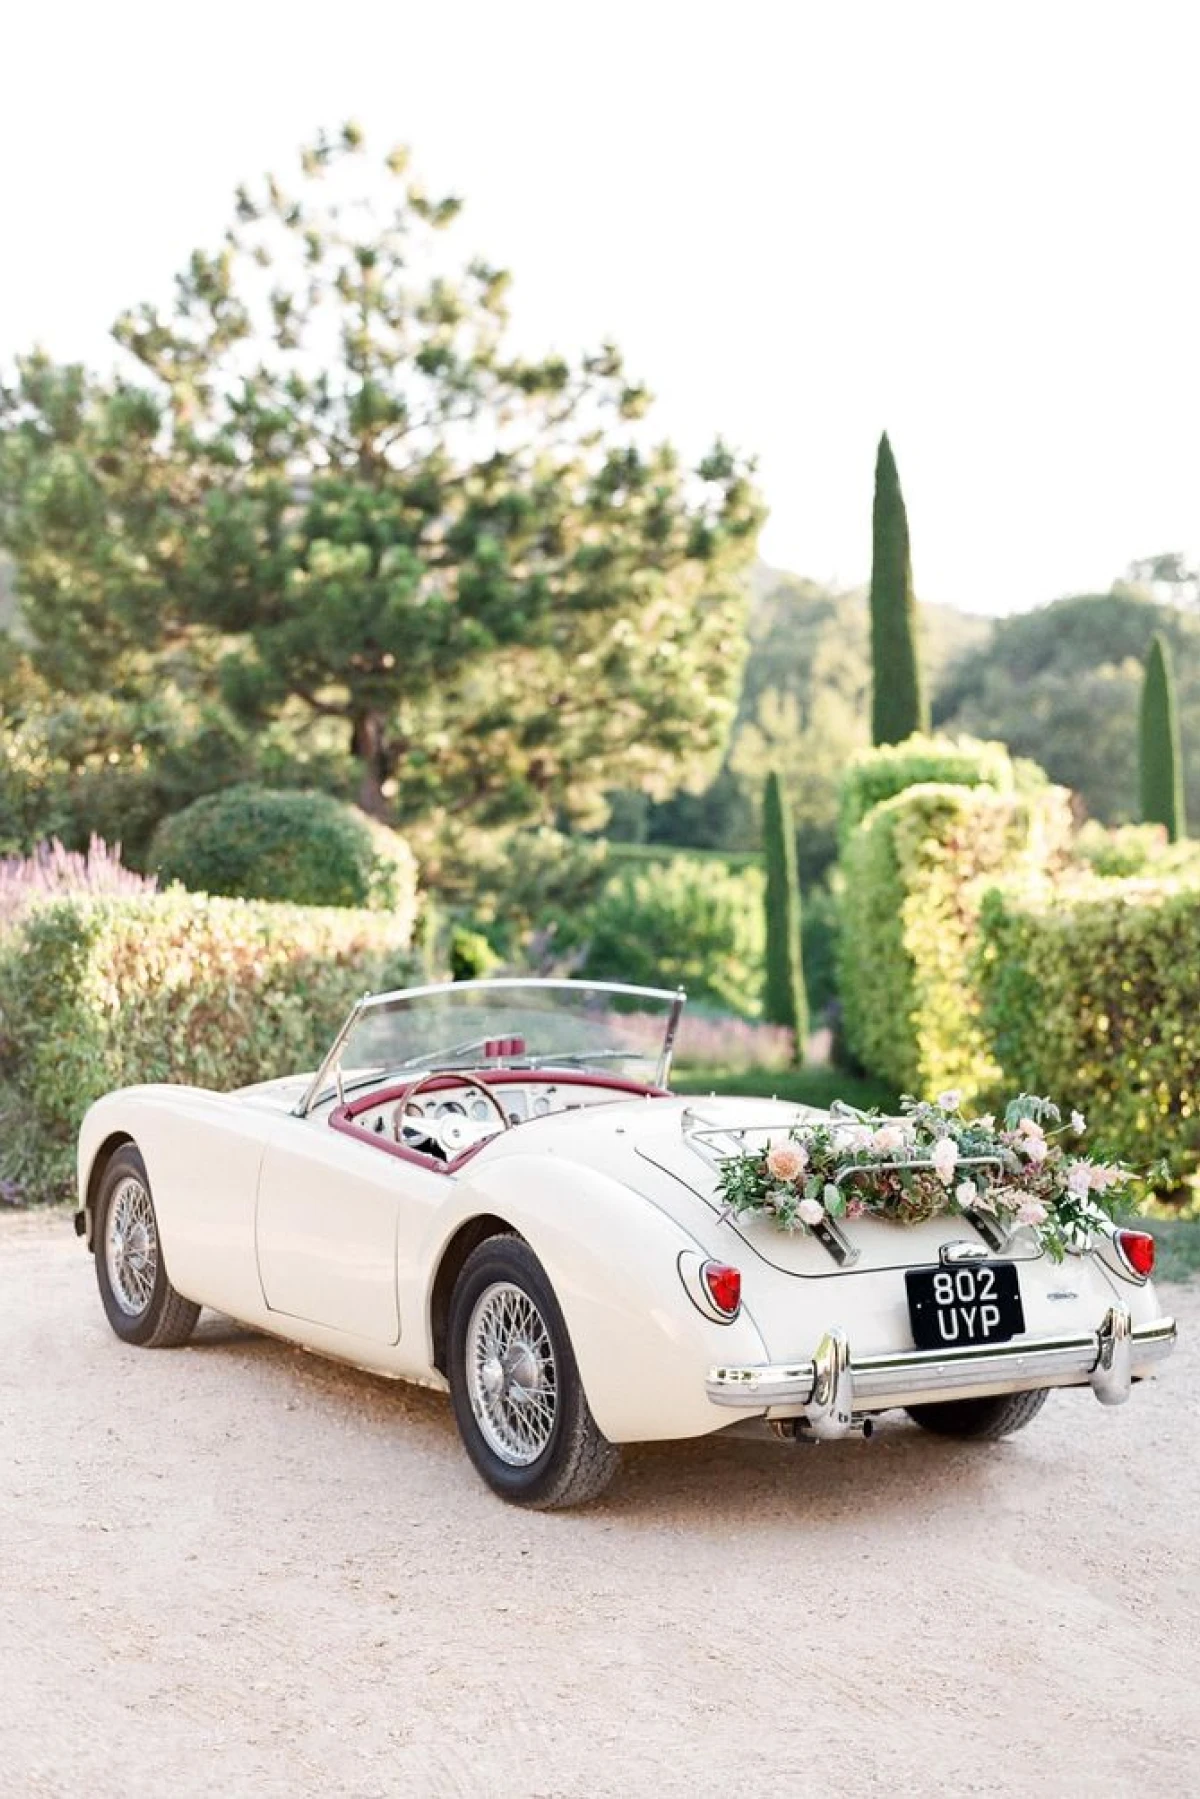 Luxury or Vintage Car